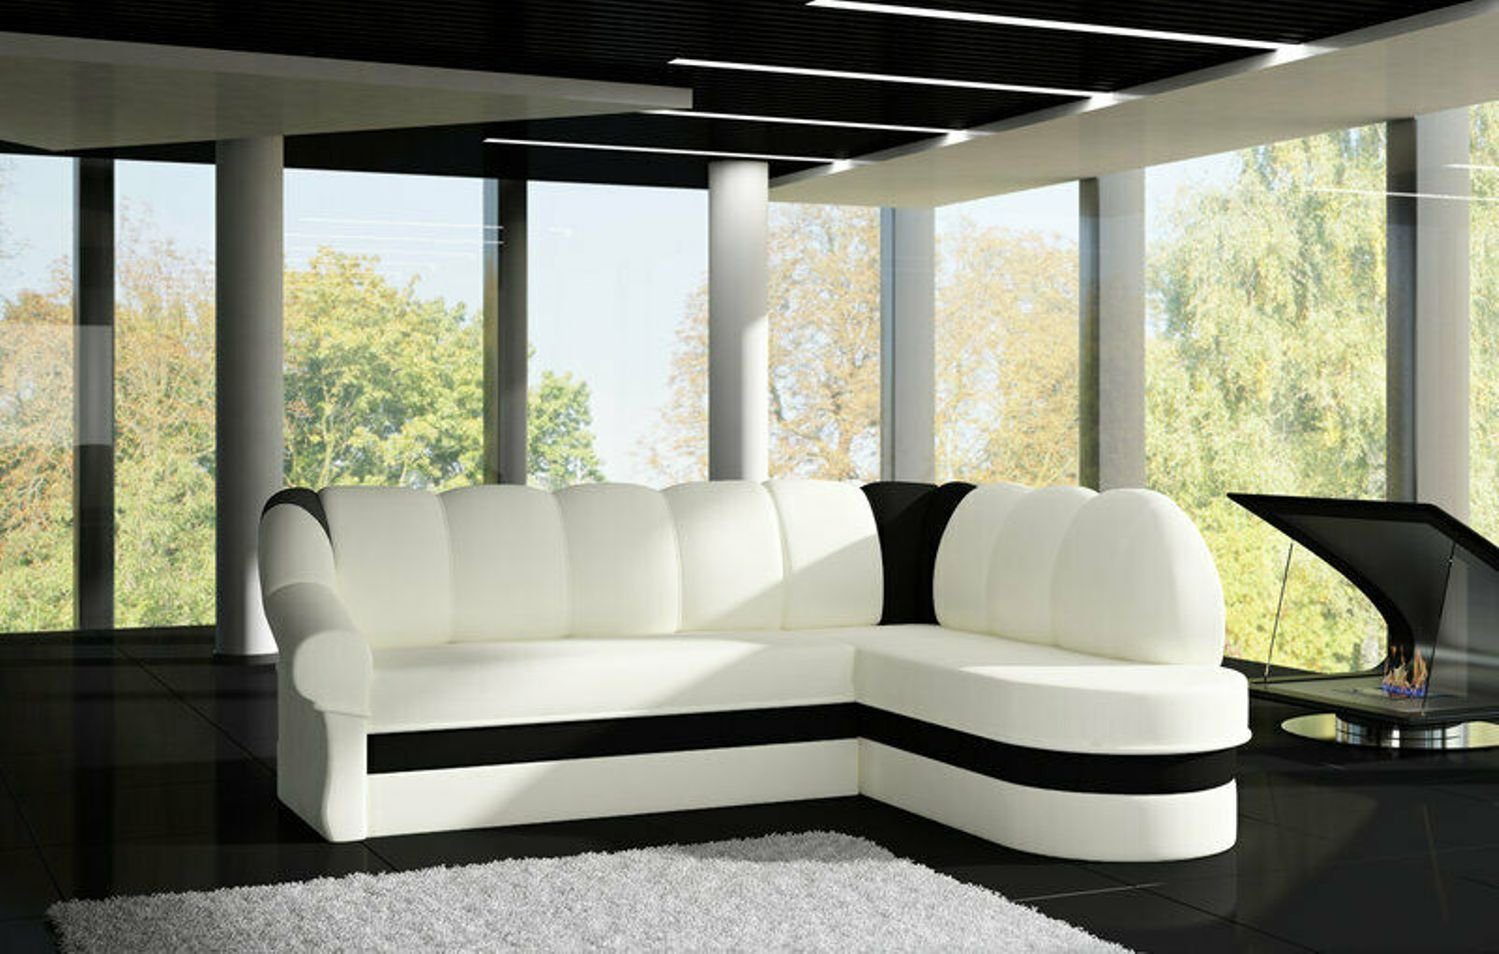 JVmoebel Ecksofa Designer Rotes Ecksofa Luxus Couch Modernes Textil Polster Sofa, Made in Europe Weiß/Schwarz